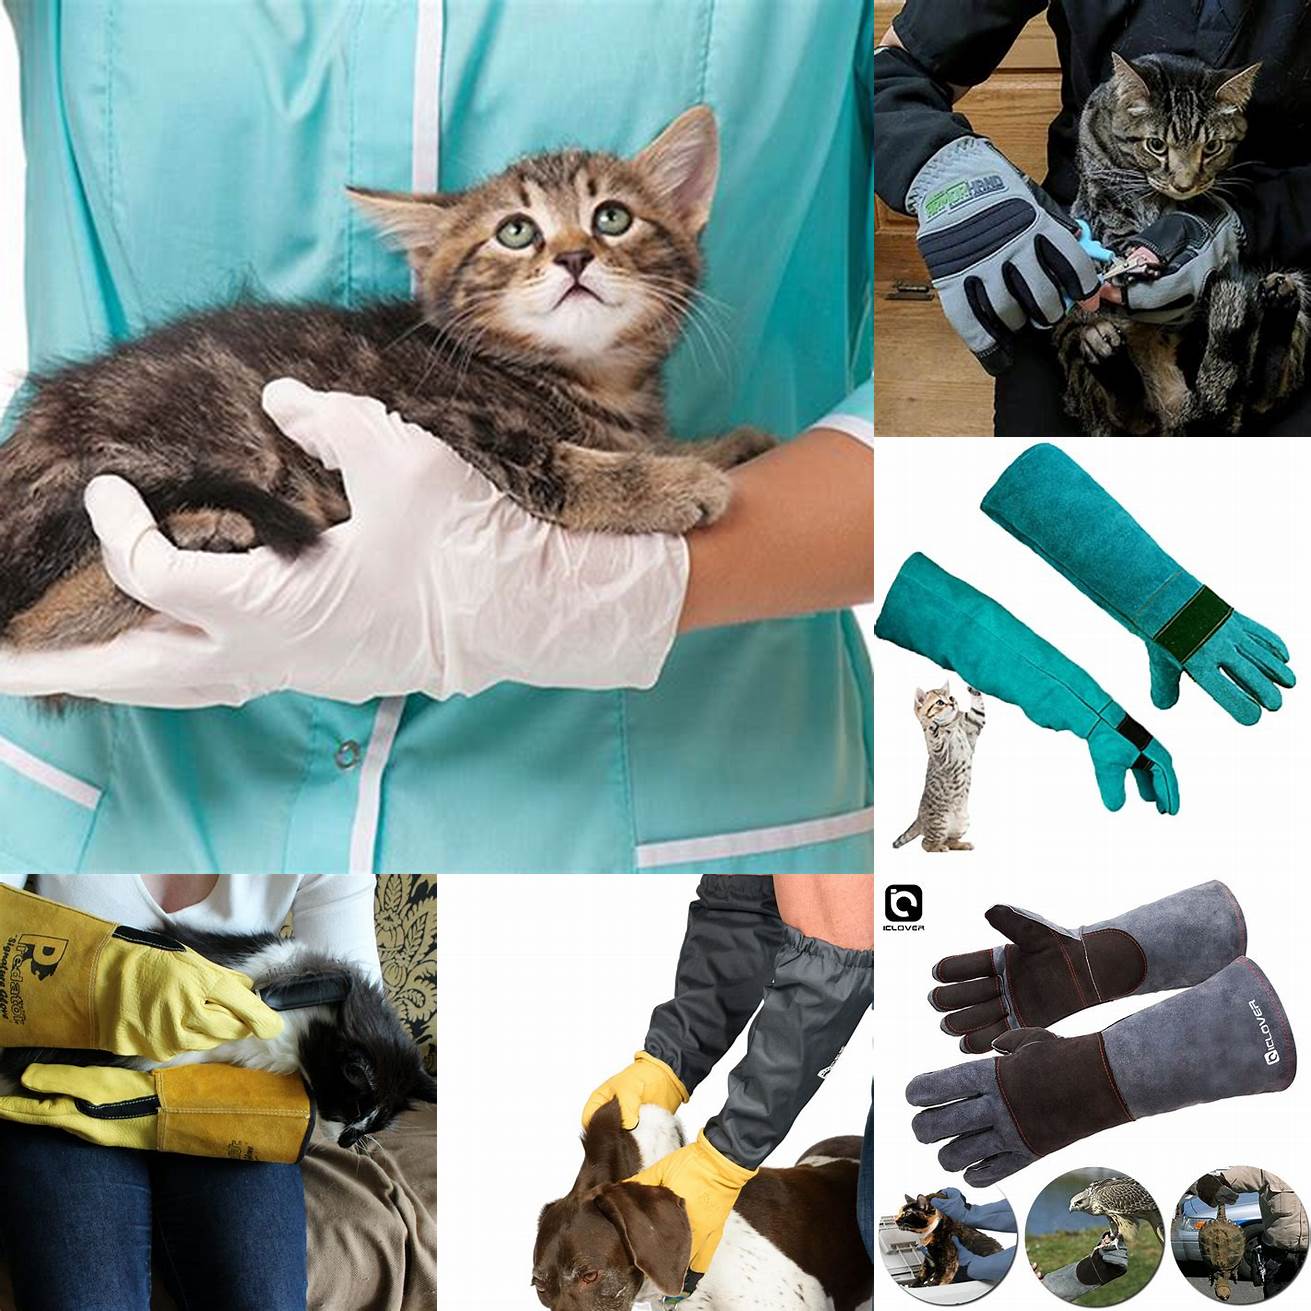 Wear gloves when handling an infected cat